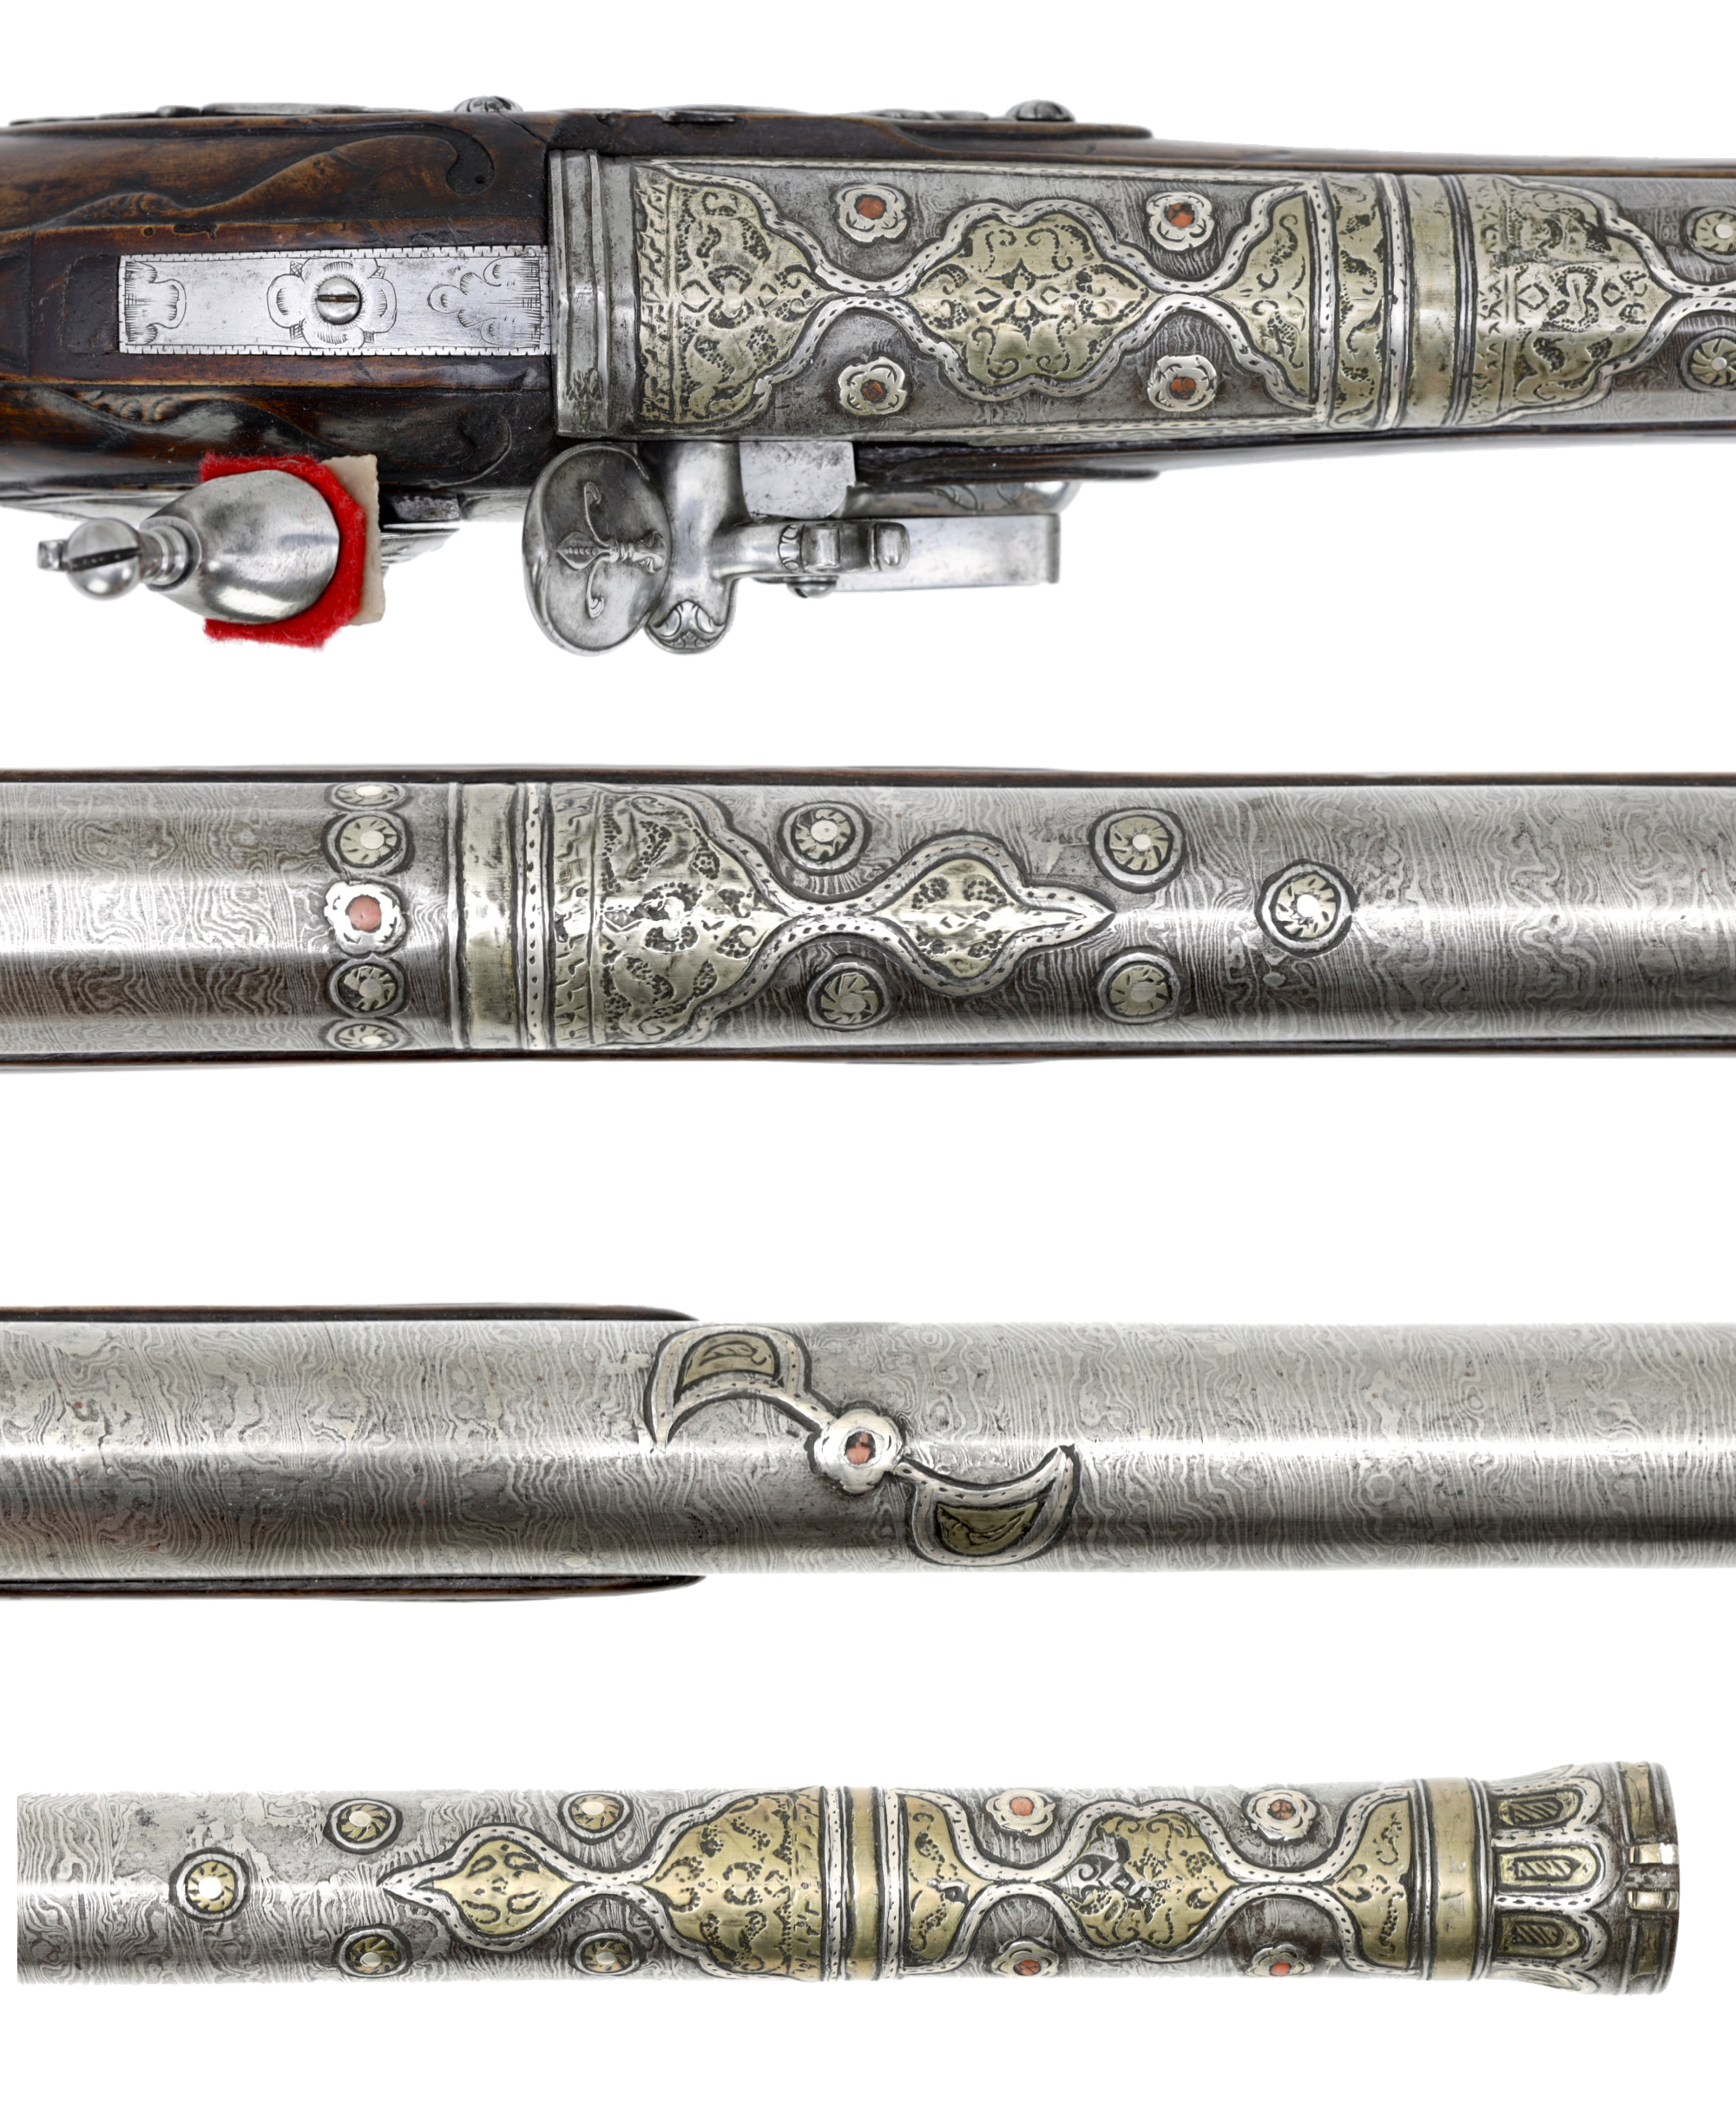 Ottoman gun barrel